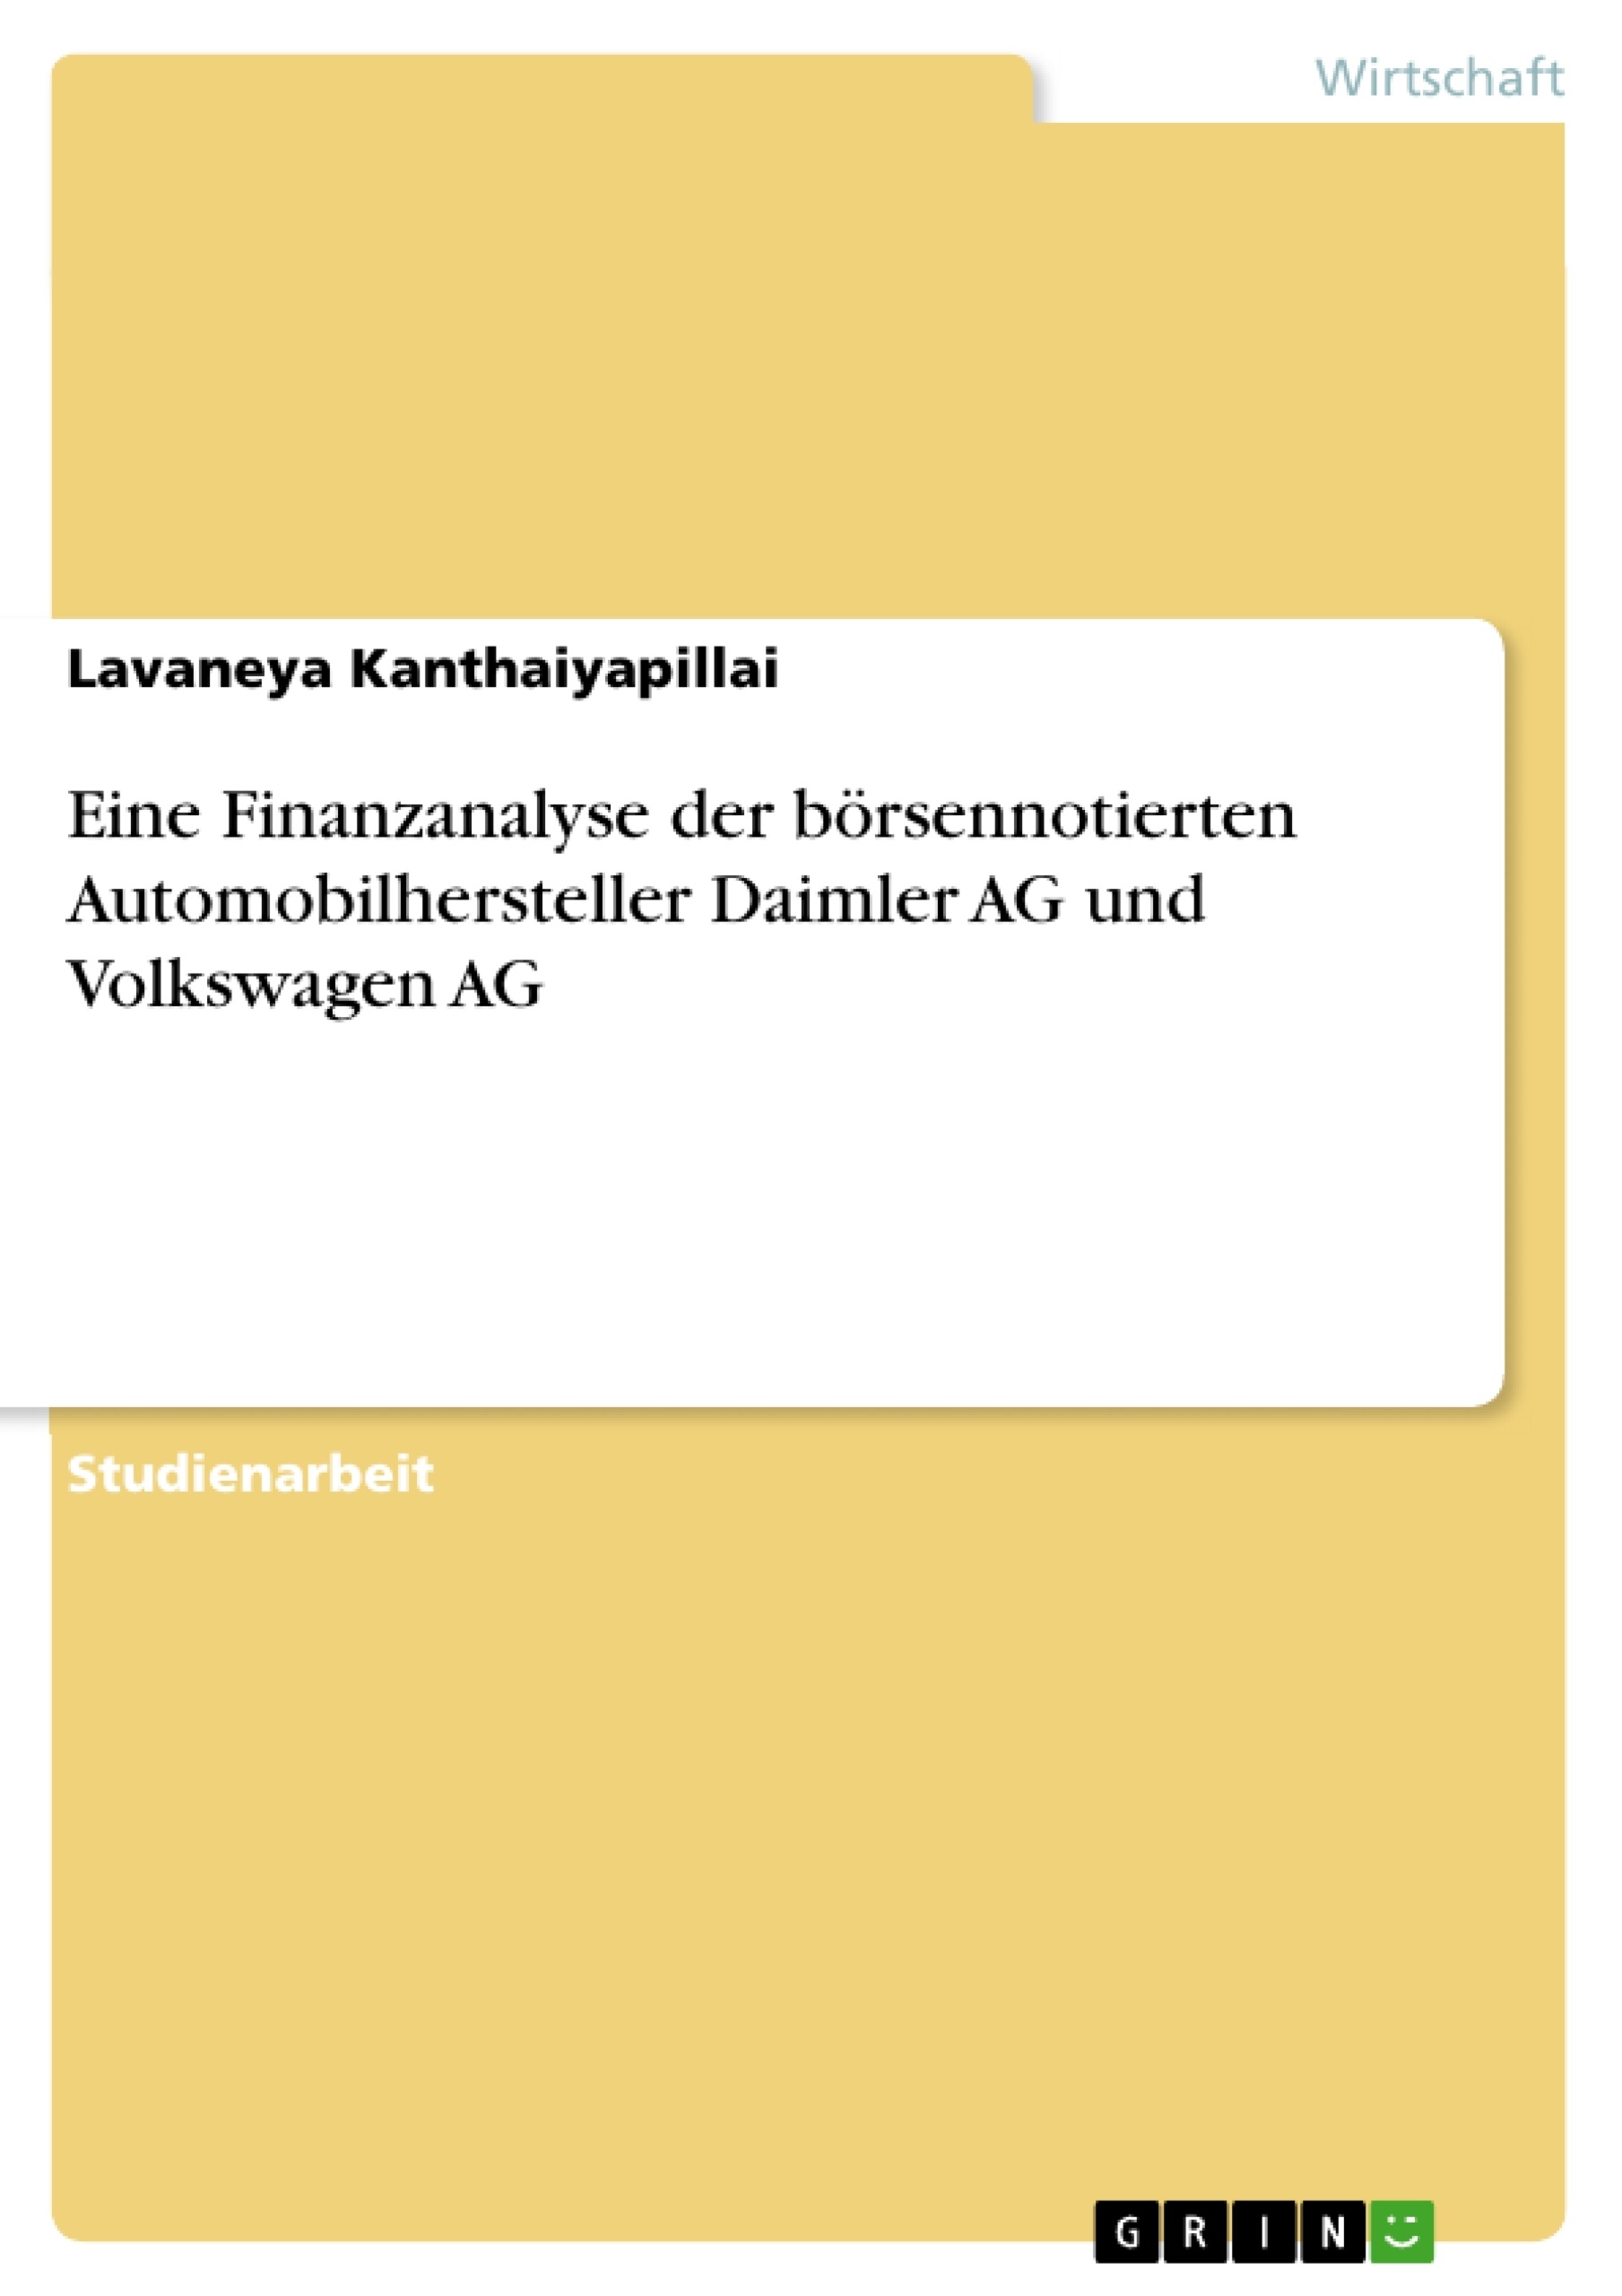 Title: Eine Finanzanalyse der börsennotierten Automobilhersteller Daimler AG und Volkswagen AG